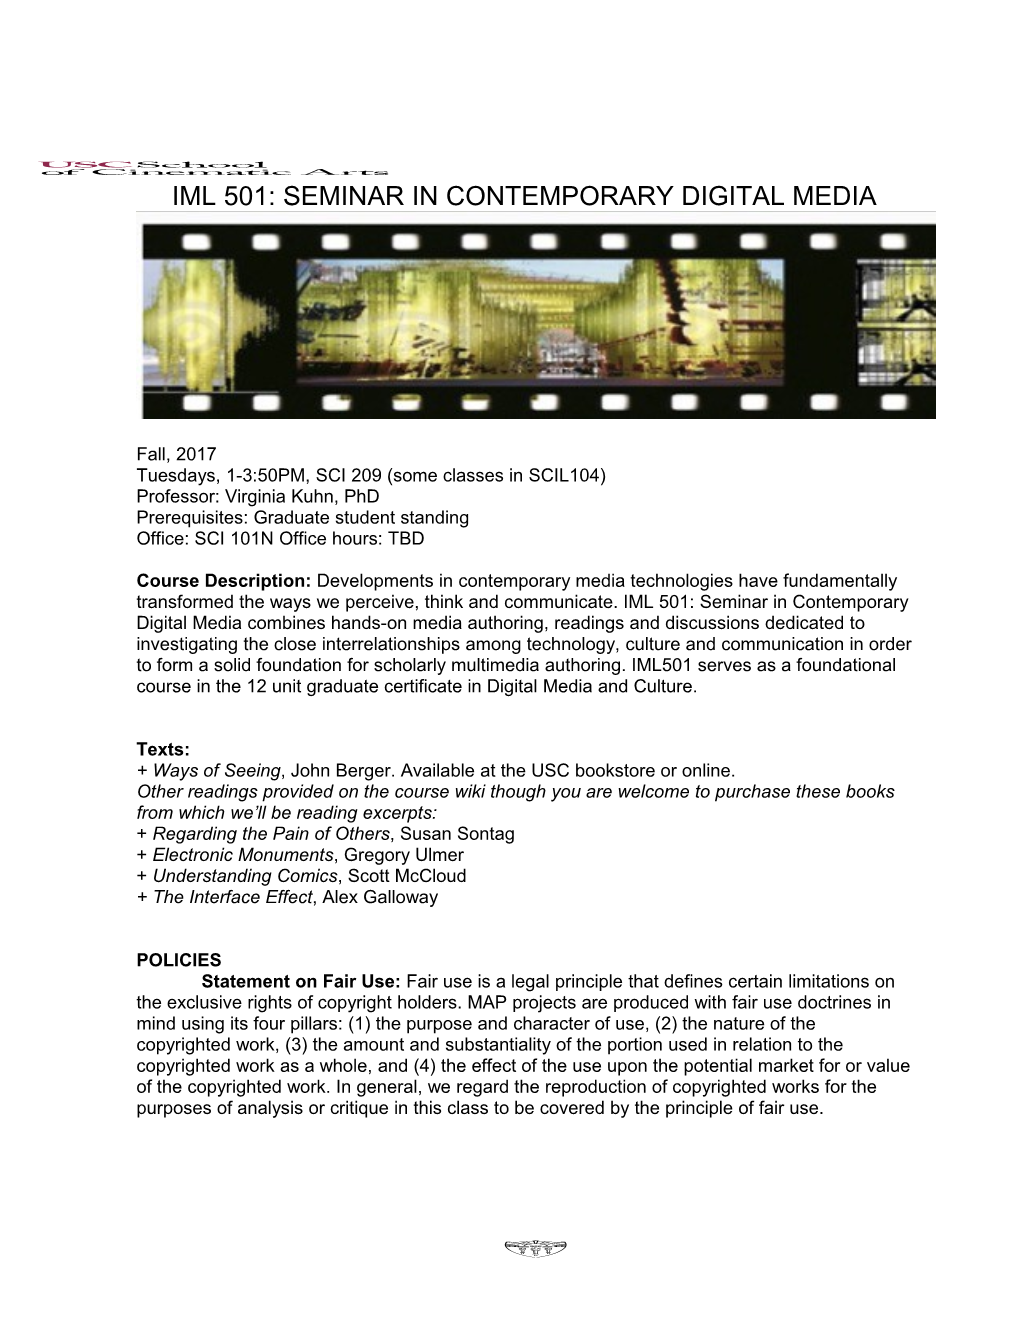 Iml 501: Seminar in Contemporary Digital Media